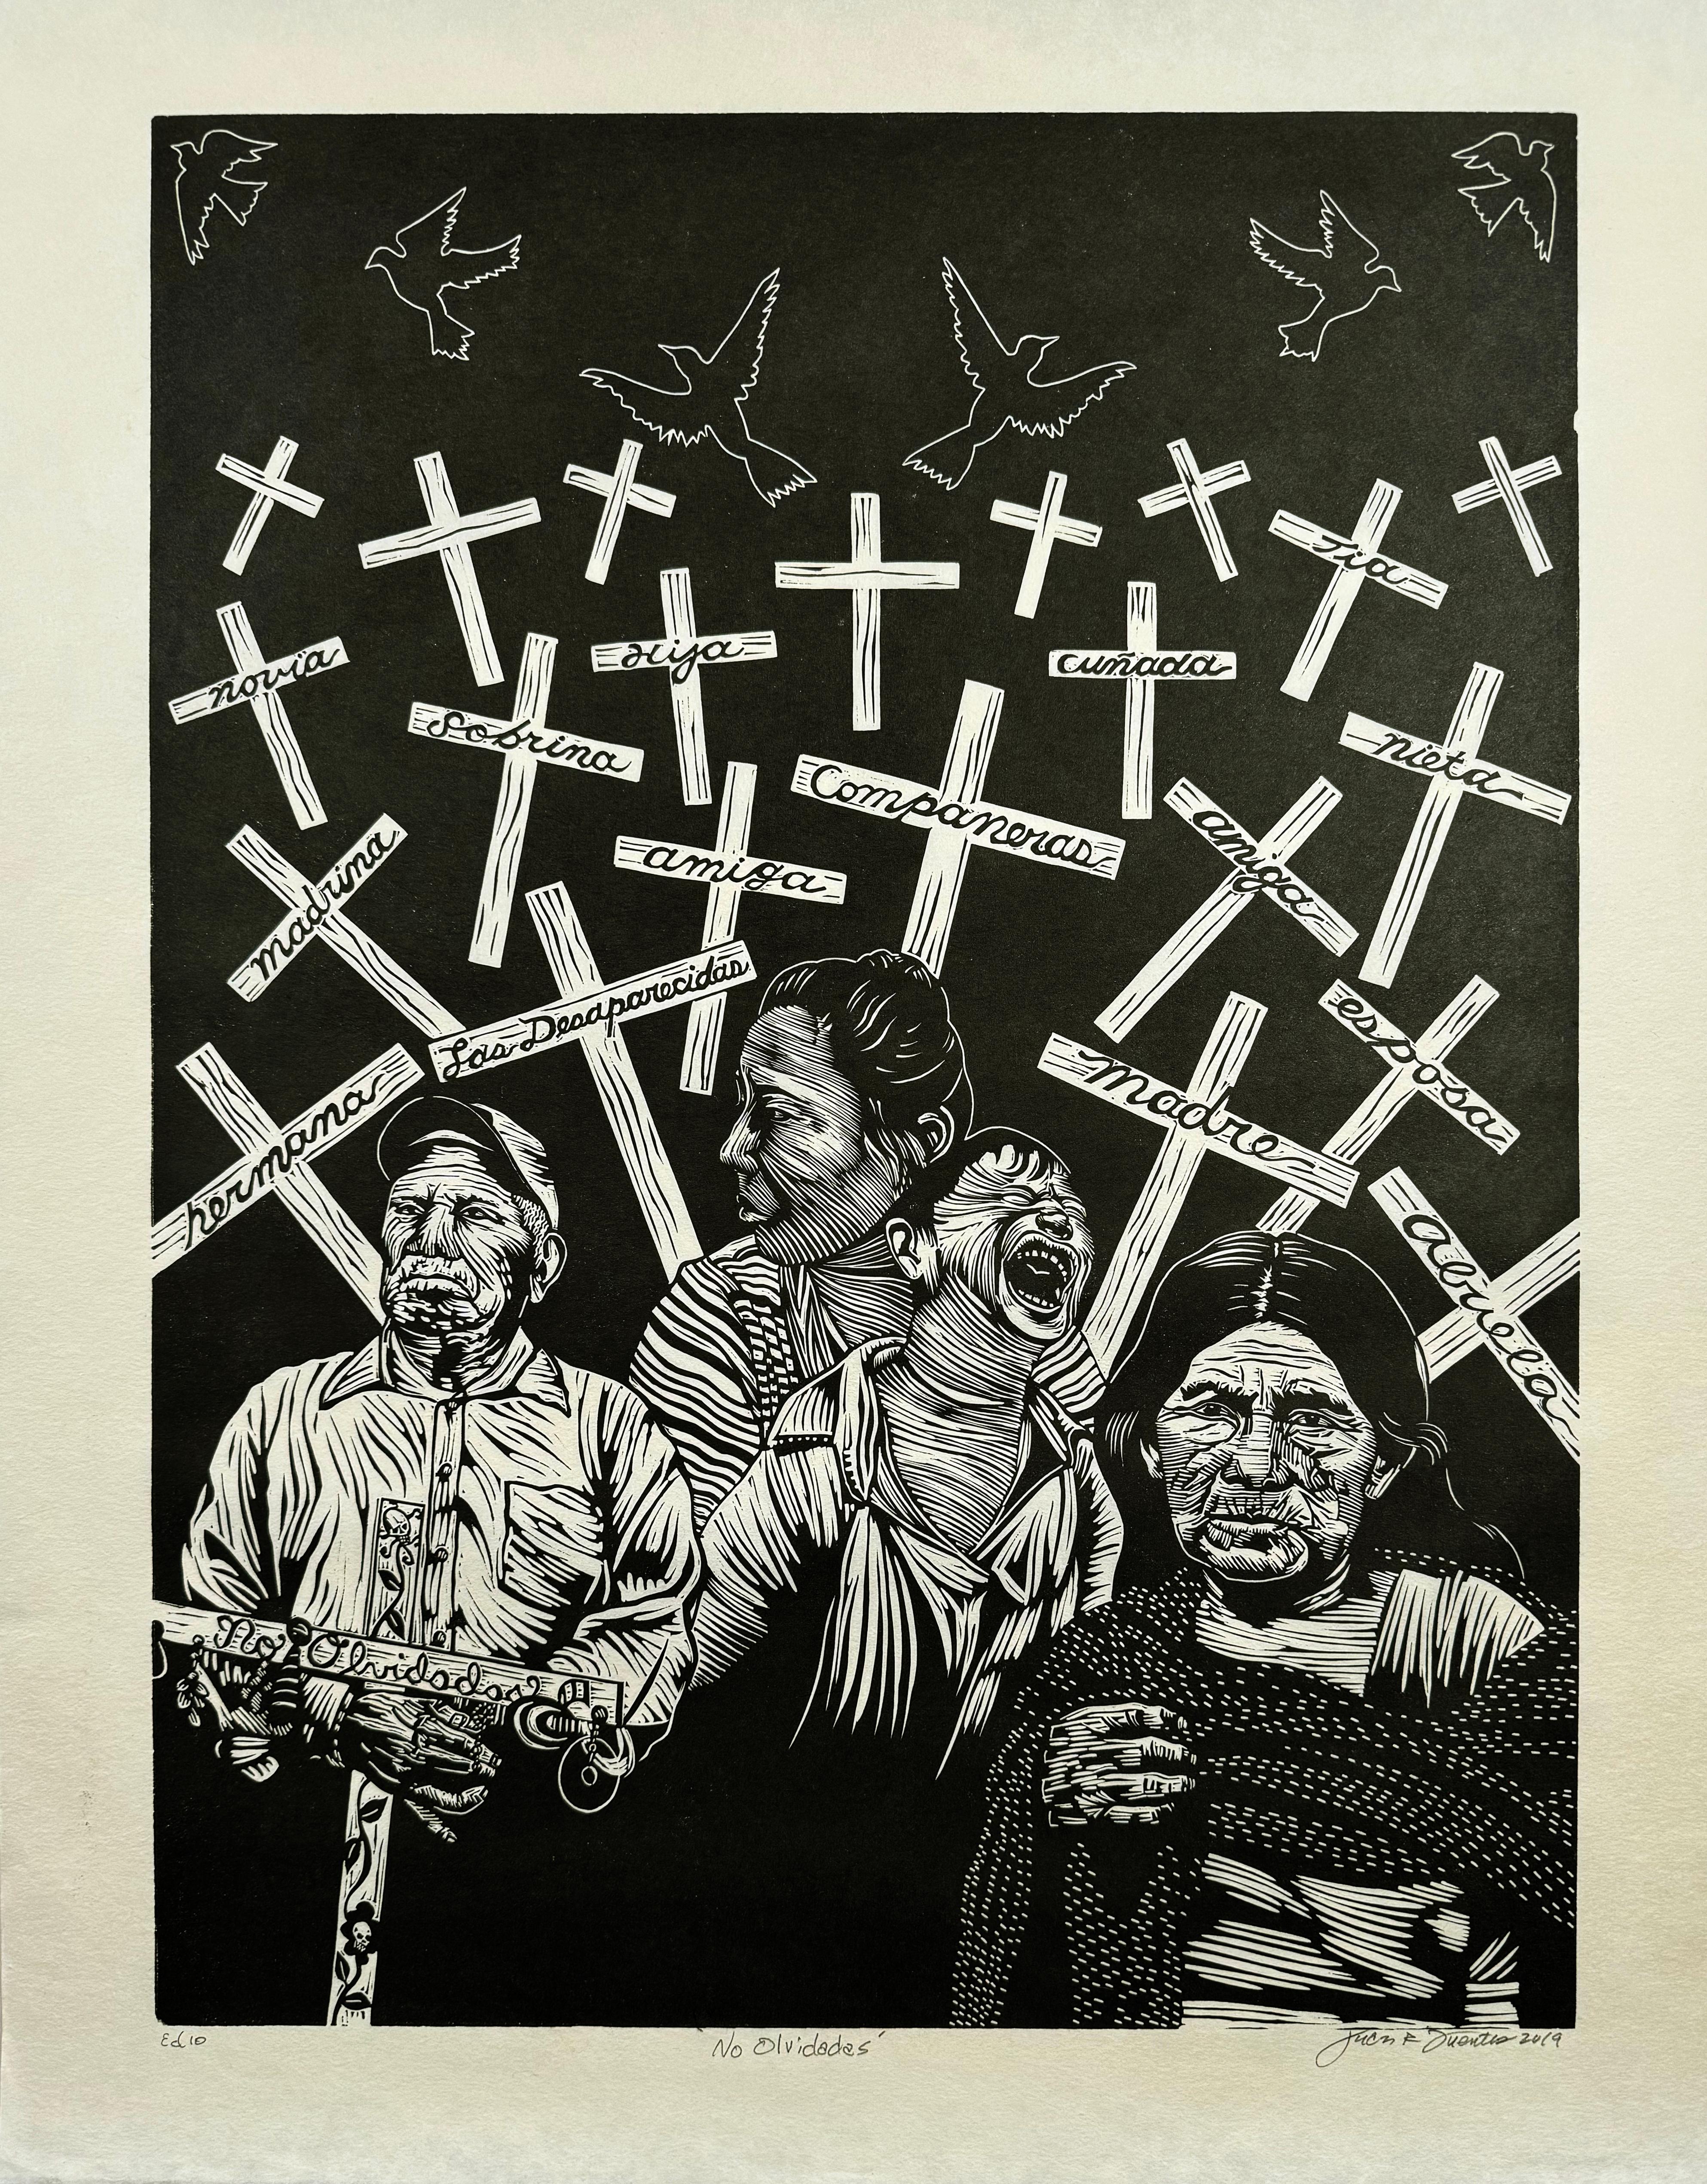 No Olvidadas (No Forgotten) - Print by Juan Fuentes